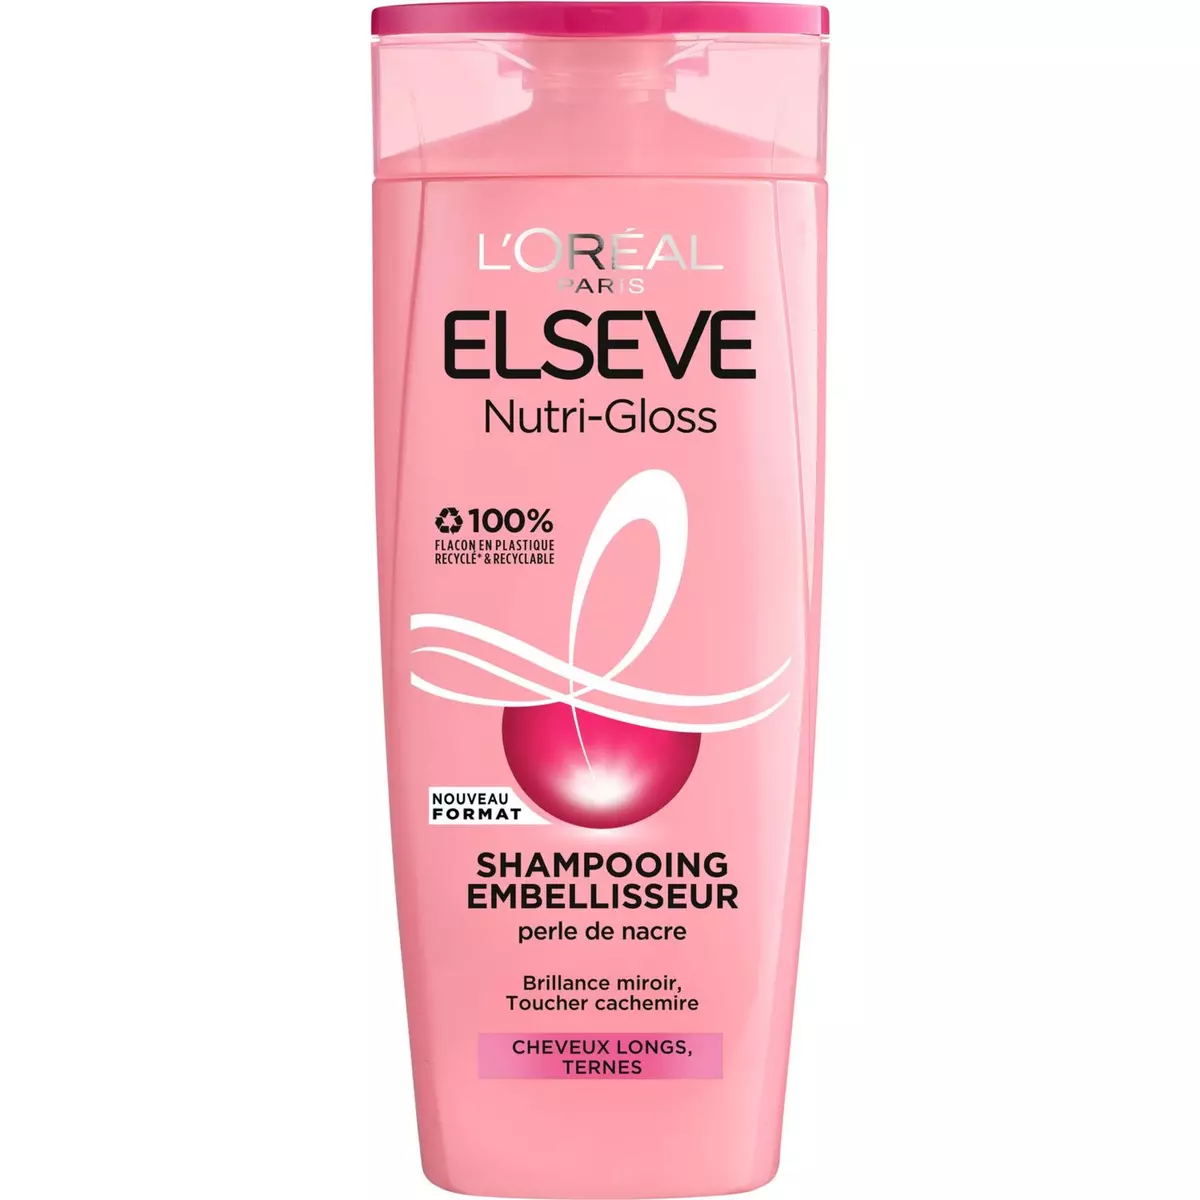 ELSEVE Nutri-Gloss shampooing embellisseur cheveux longs ternes 290ml